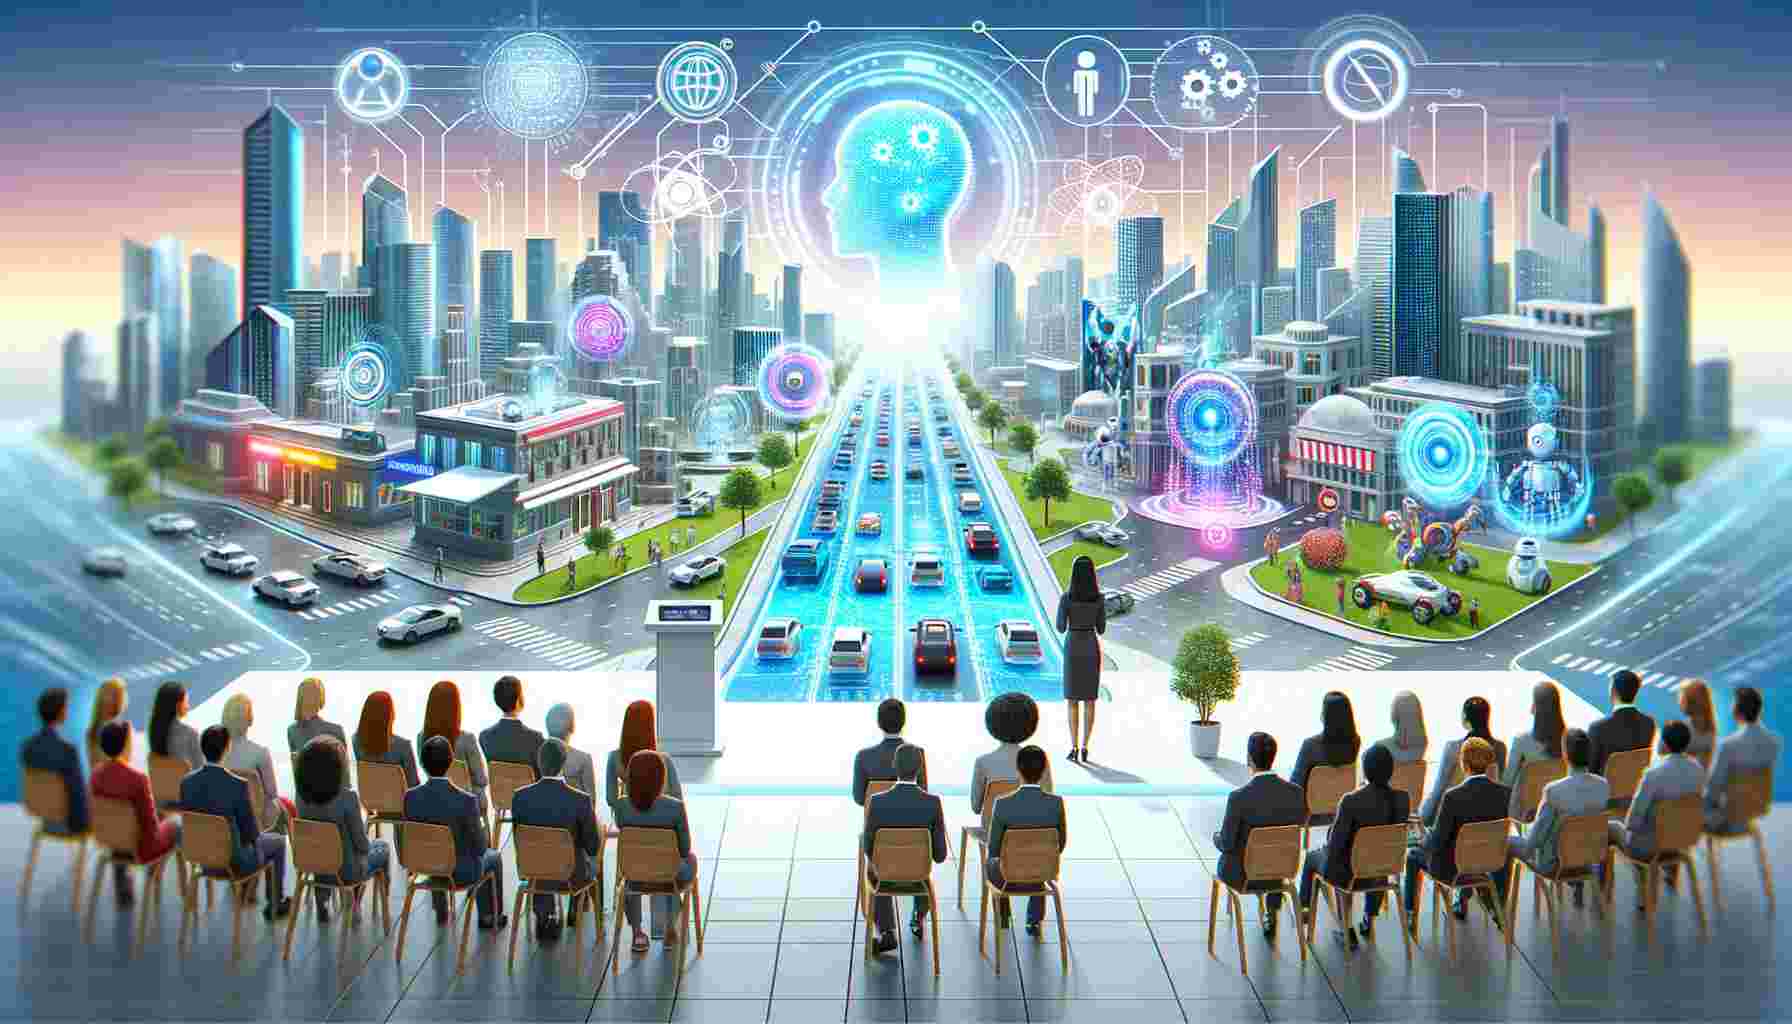 Les dernières avancées en intelligence artificielle et leur impact sur la société